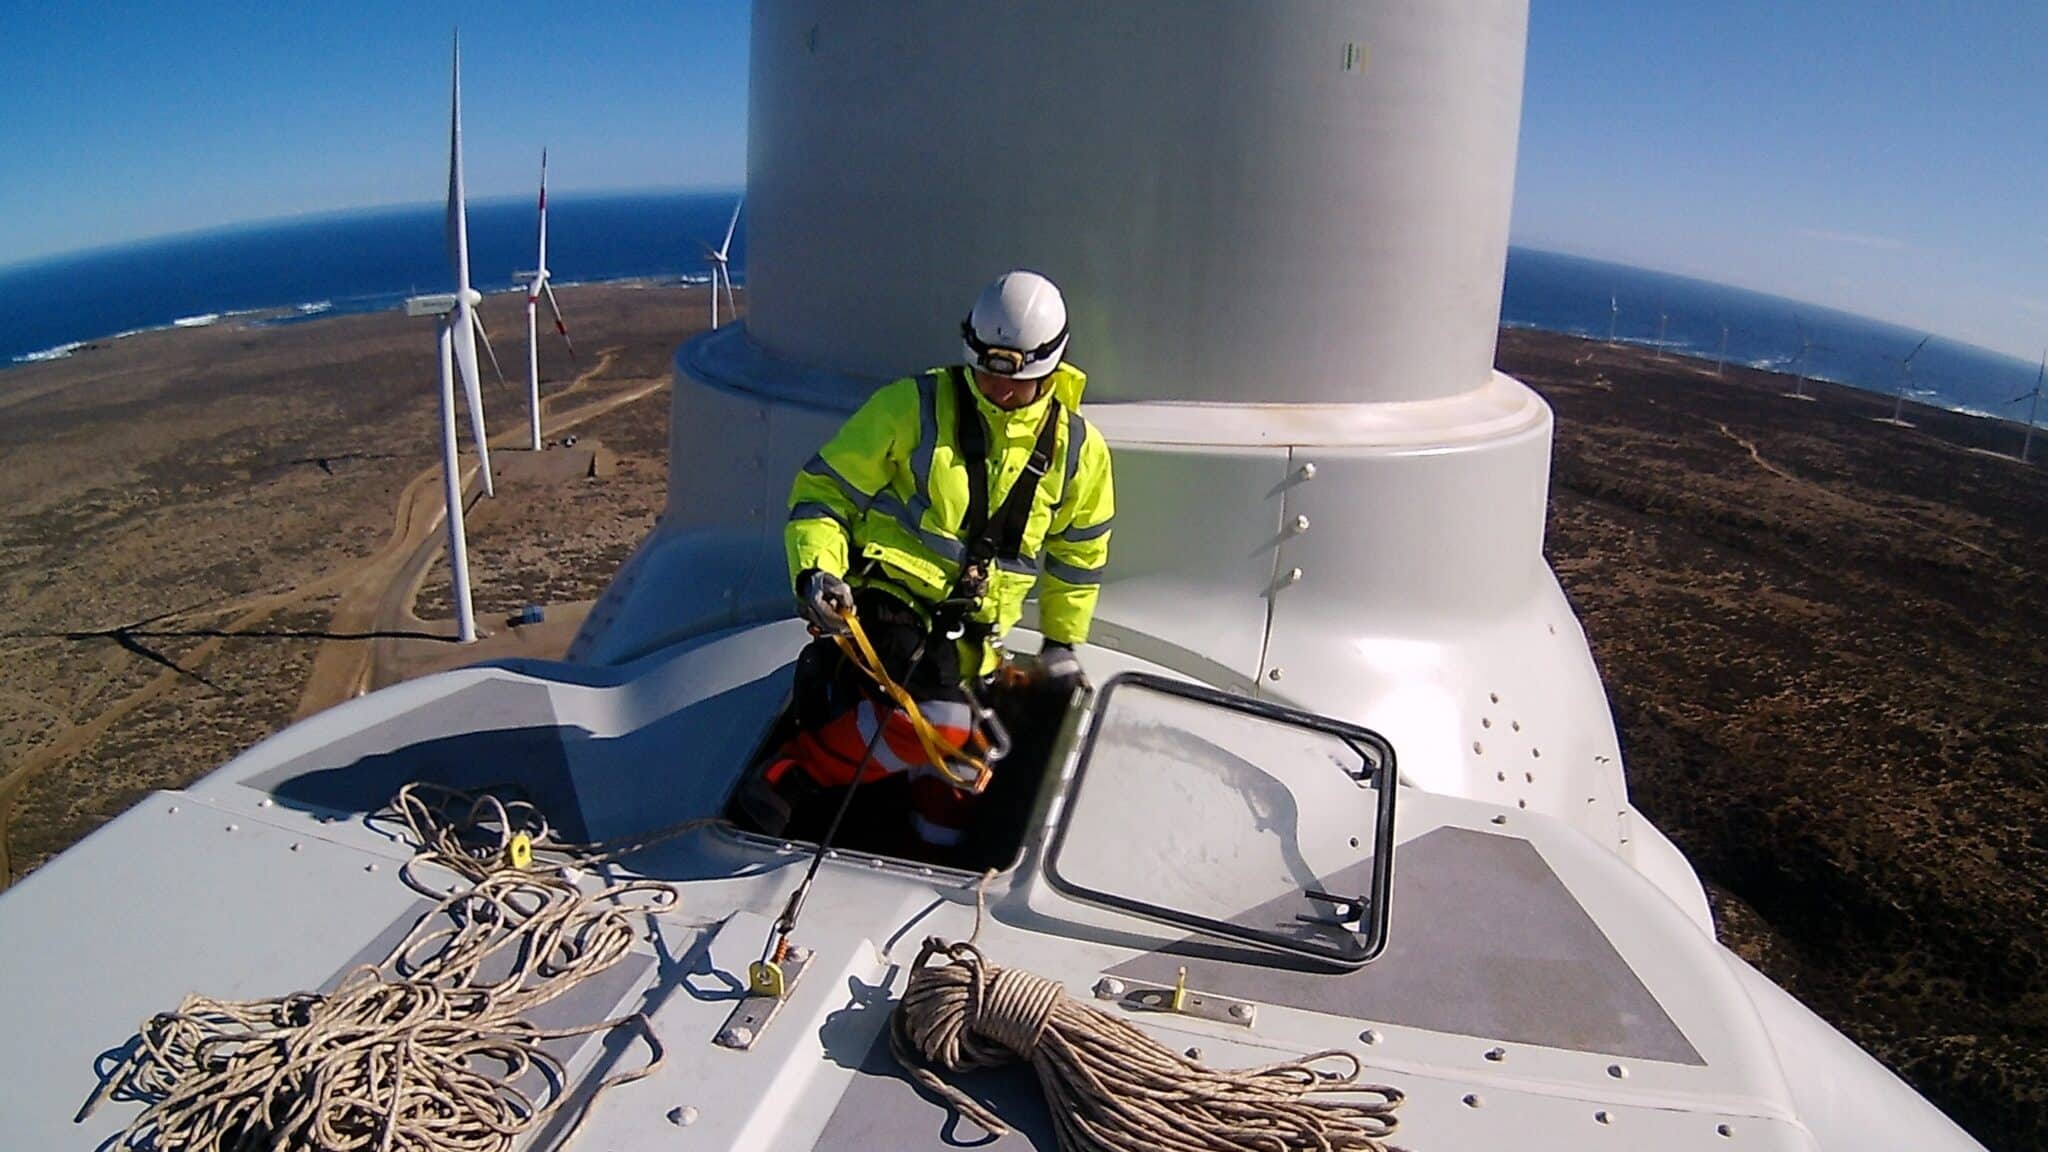 Nordex - turbines - blades - wind - AES - Vortex - Vestas - Aeris Energy - Pecém - Statkraft